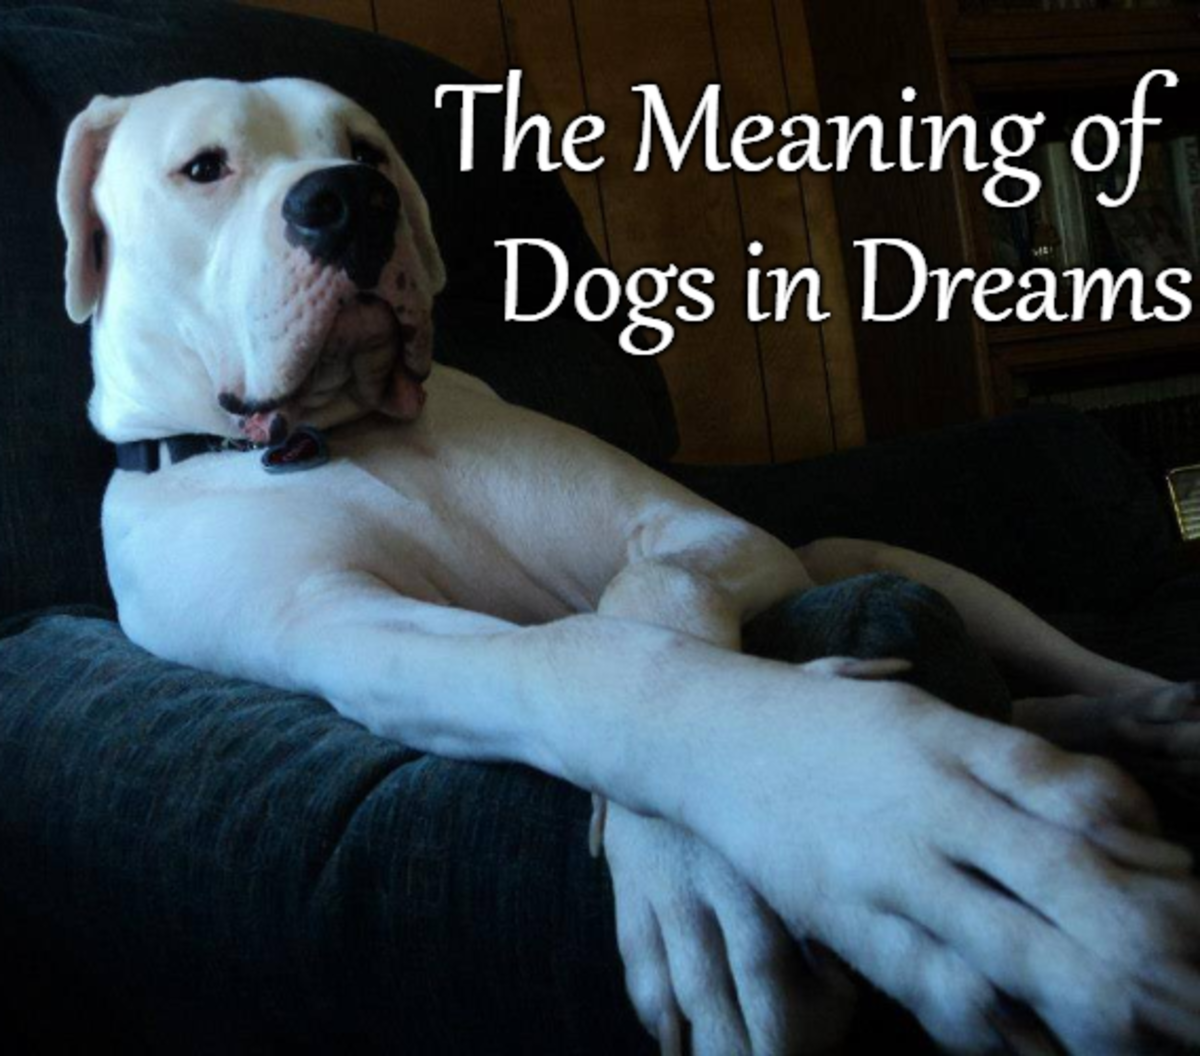  Soñar con varios perros (Interpretación afortunada)